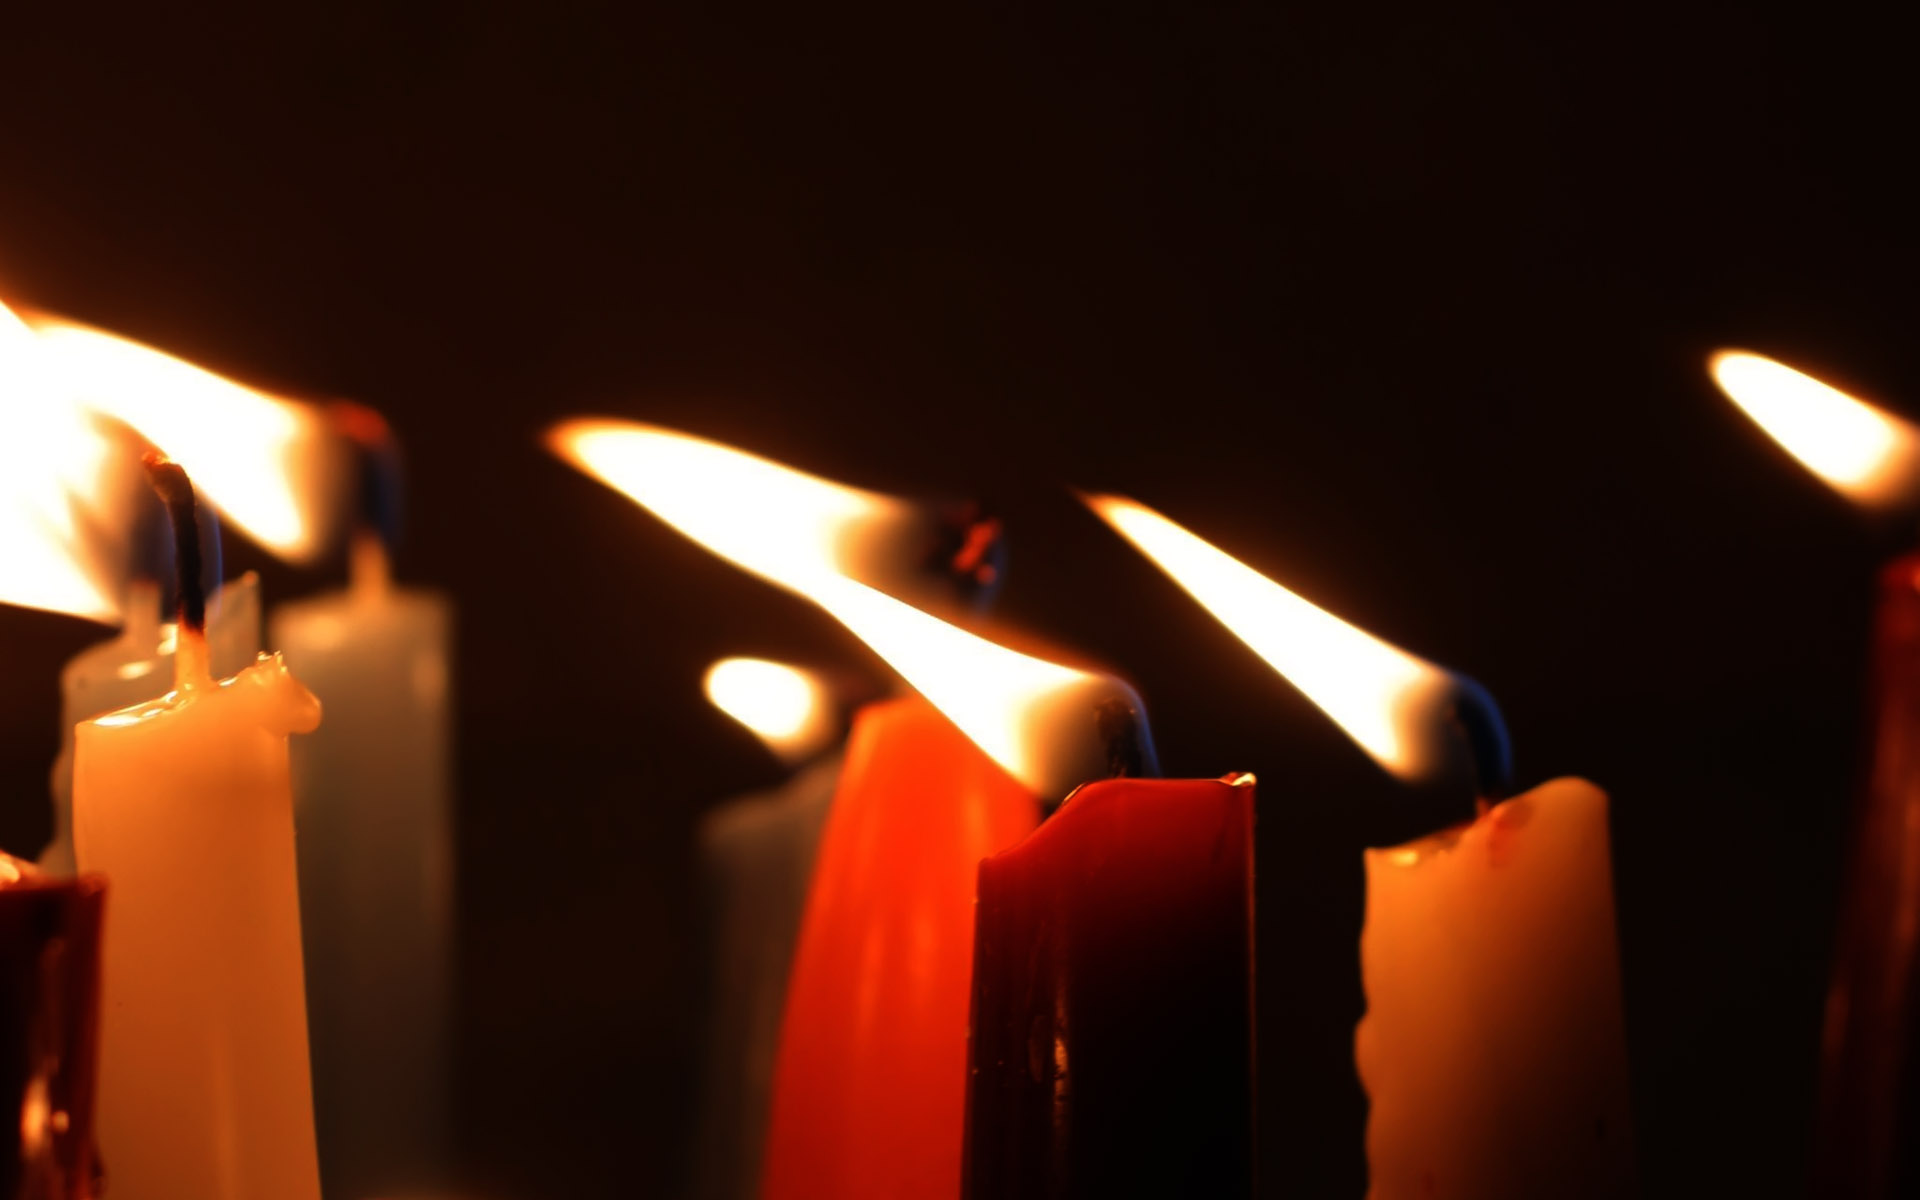 Песни ночи в отеле свечи горели. Зажженная свеча. Горящие свечи. Холокост день памяти. Международный день памяти жертв Холокоста.